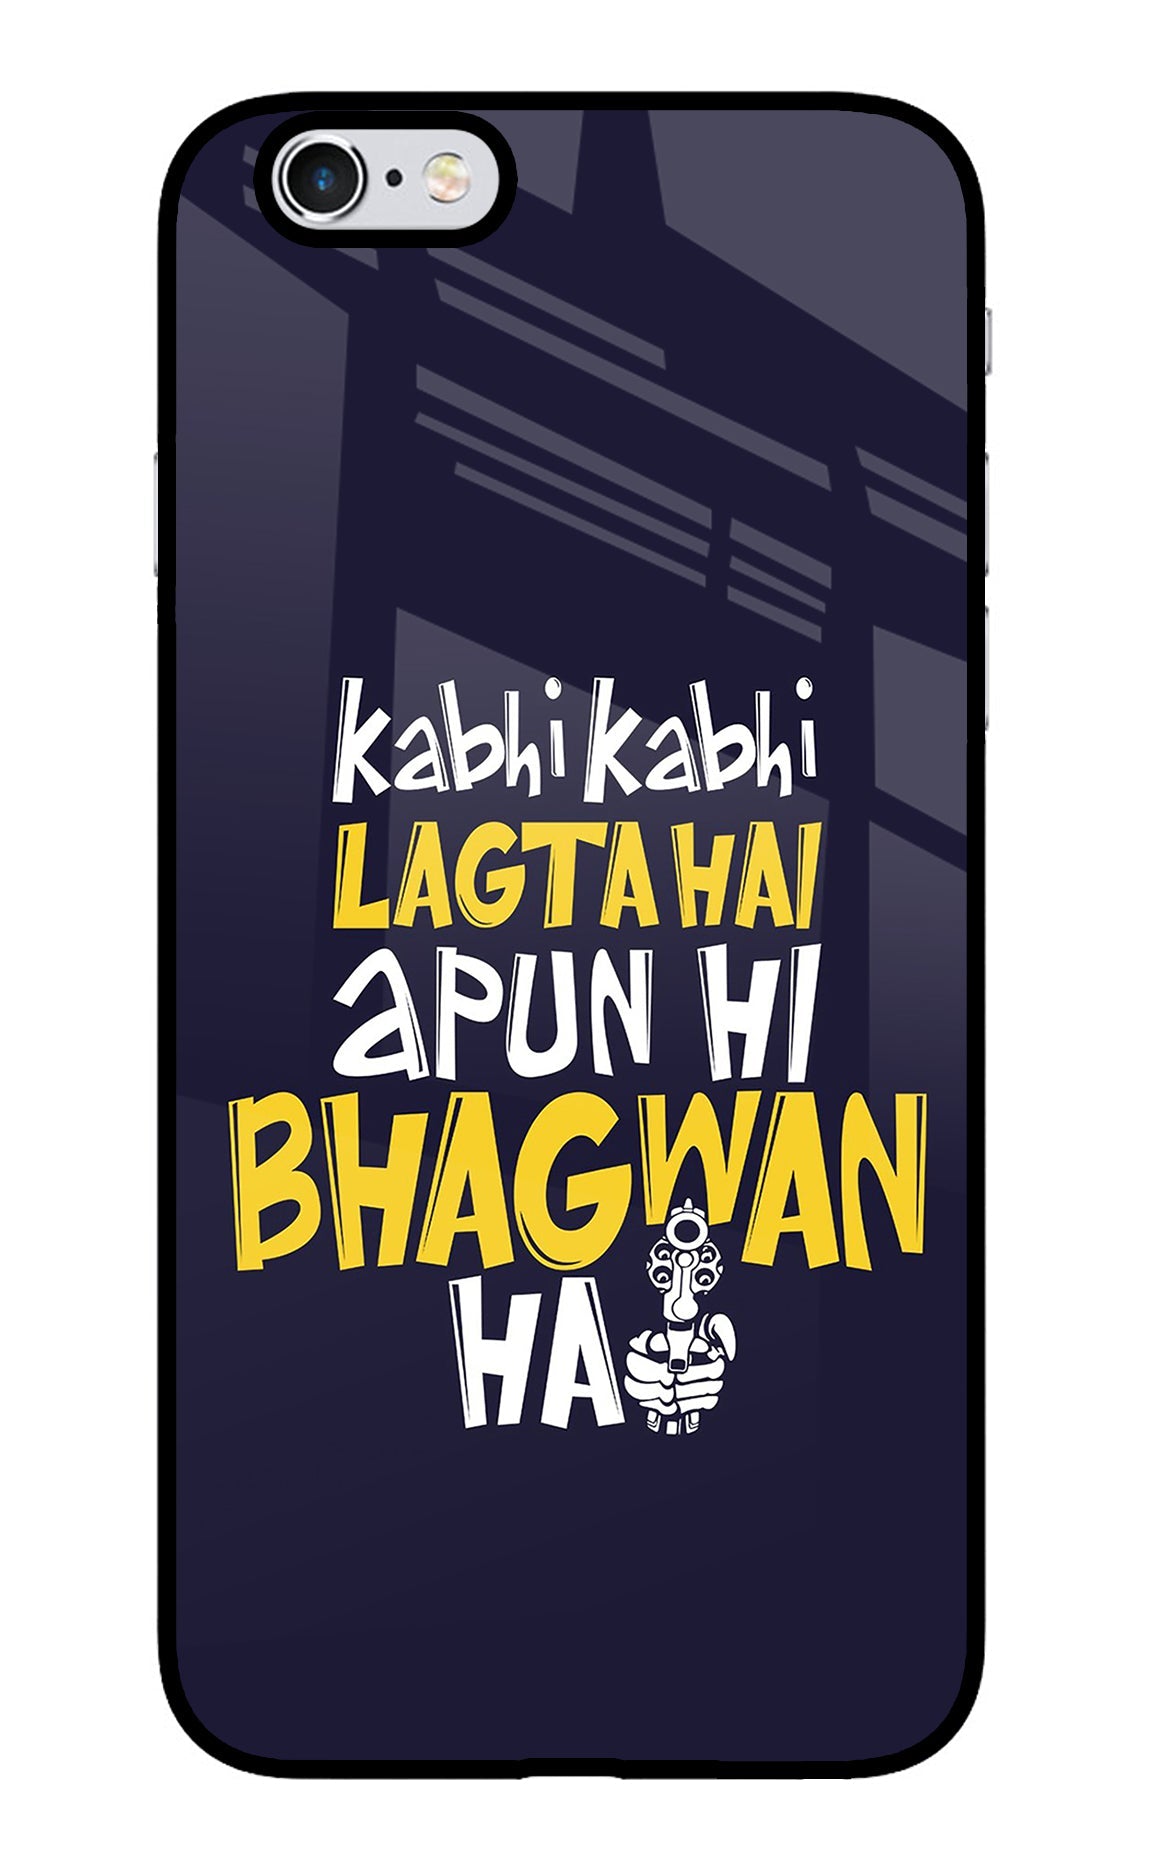 Kabhi Kabhi Lagta Hai Apun Hi Bhagwan Hai iPhone 6/6s Glass Case